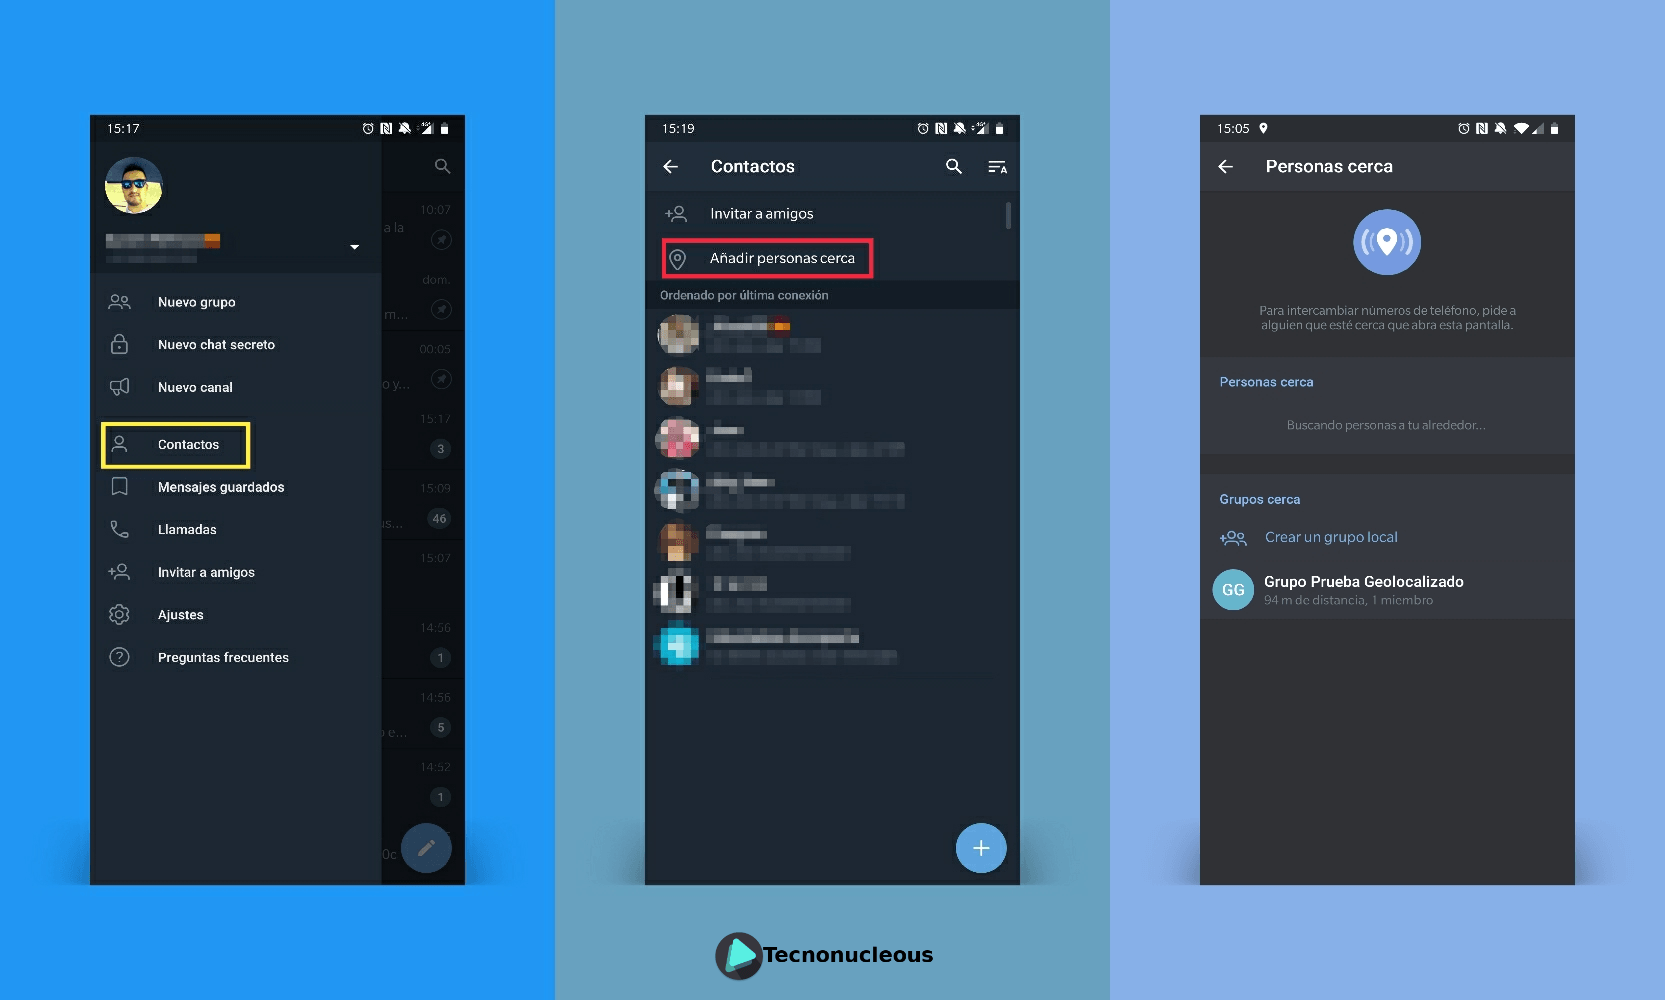 Grupos cercanos en Telegram 5.8